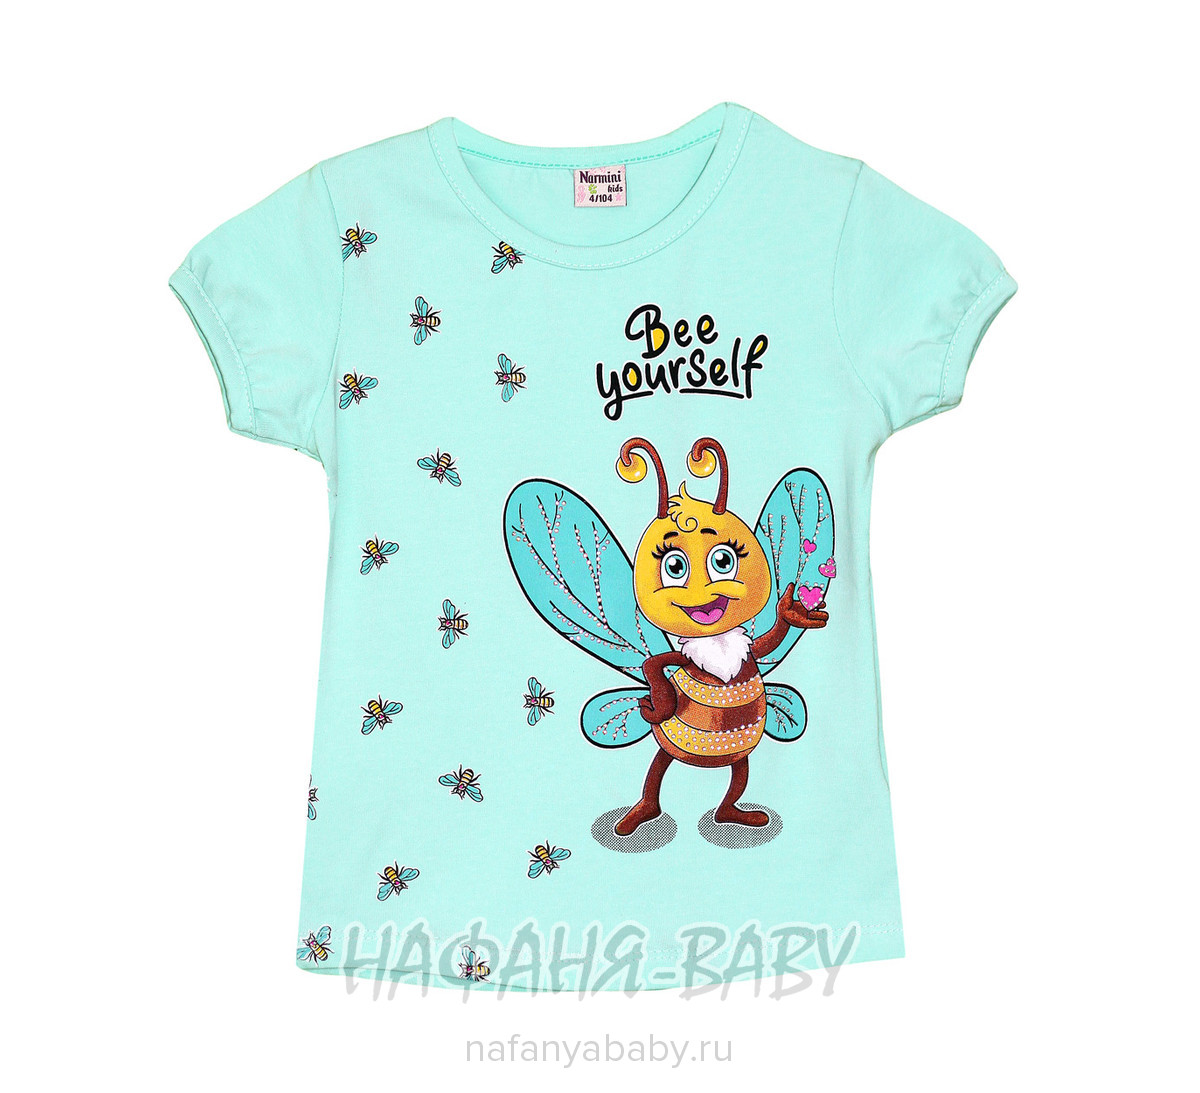 Детская футболка NARMINI арт: 7601, 5-9 лет, 1-4 года, цвет аквамариновый, оптом Турция